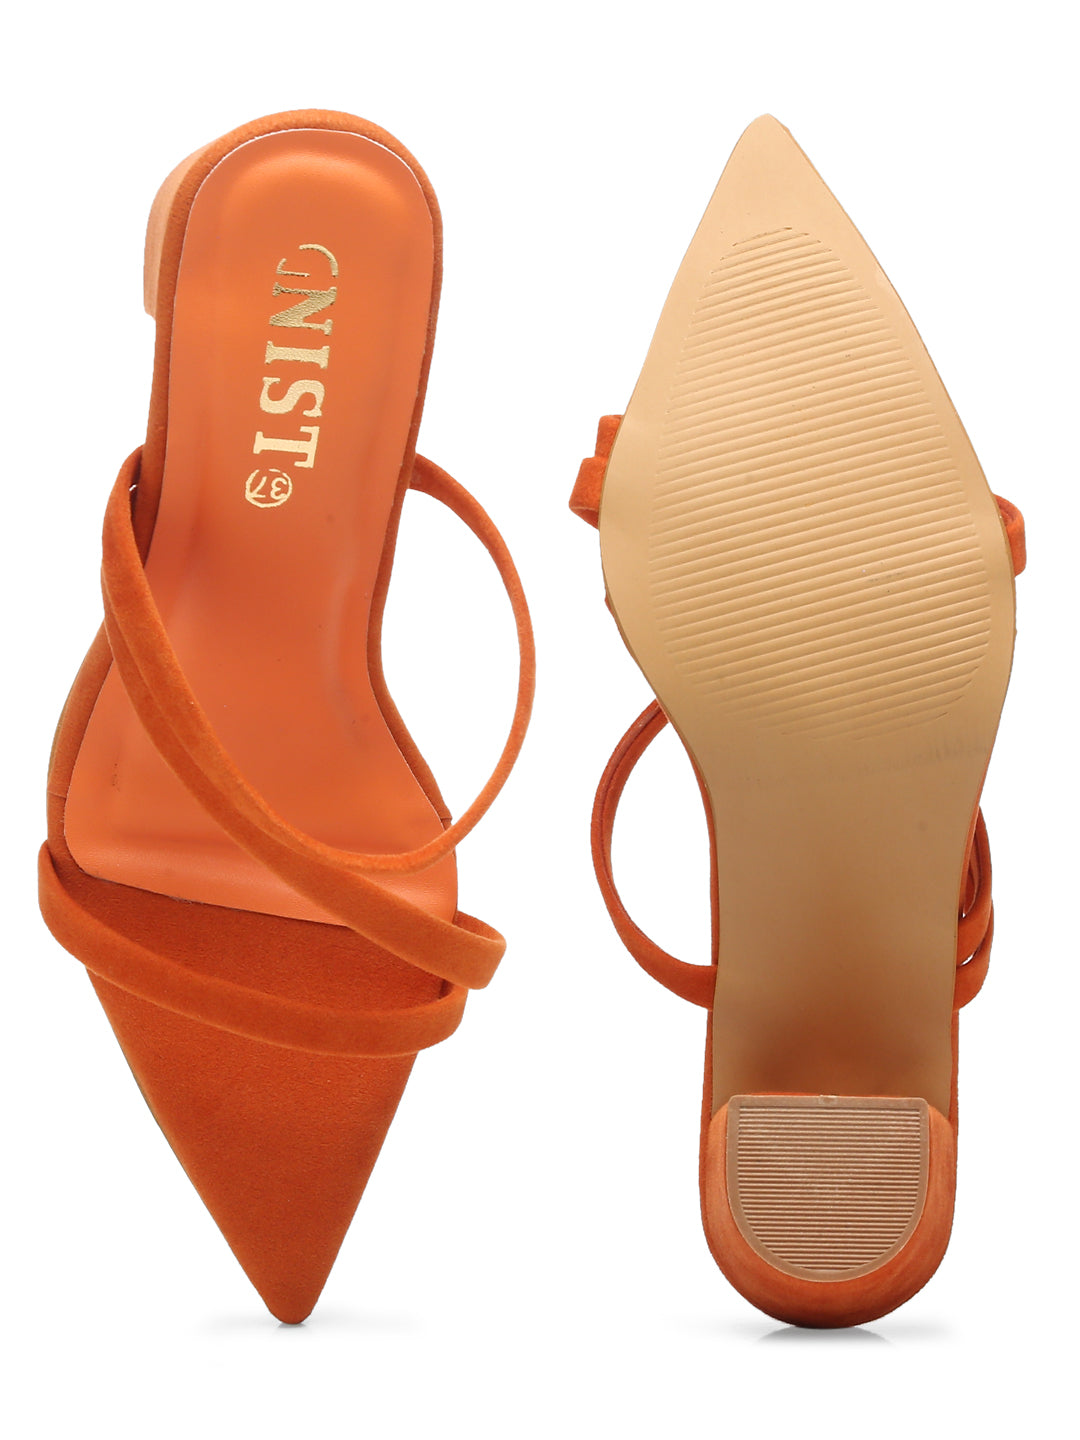 GNIST Super Pointed Orange Stilettos Heels